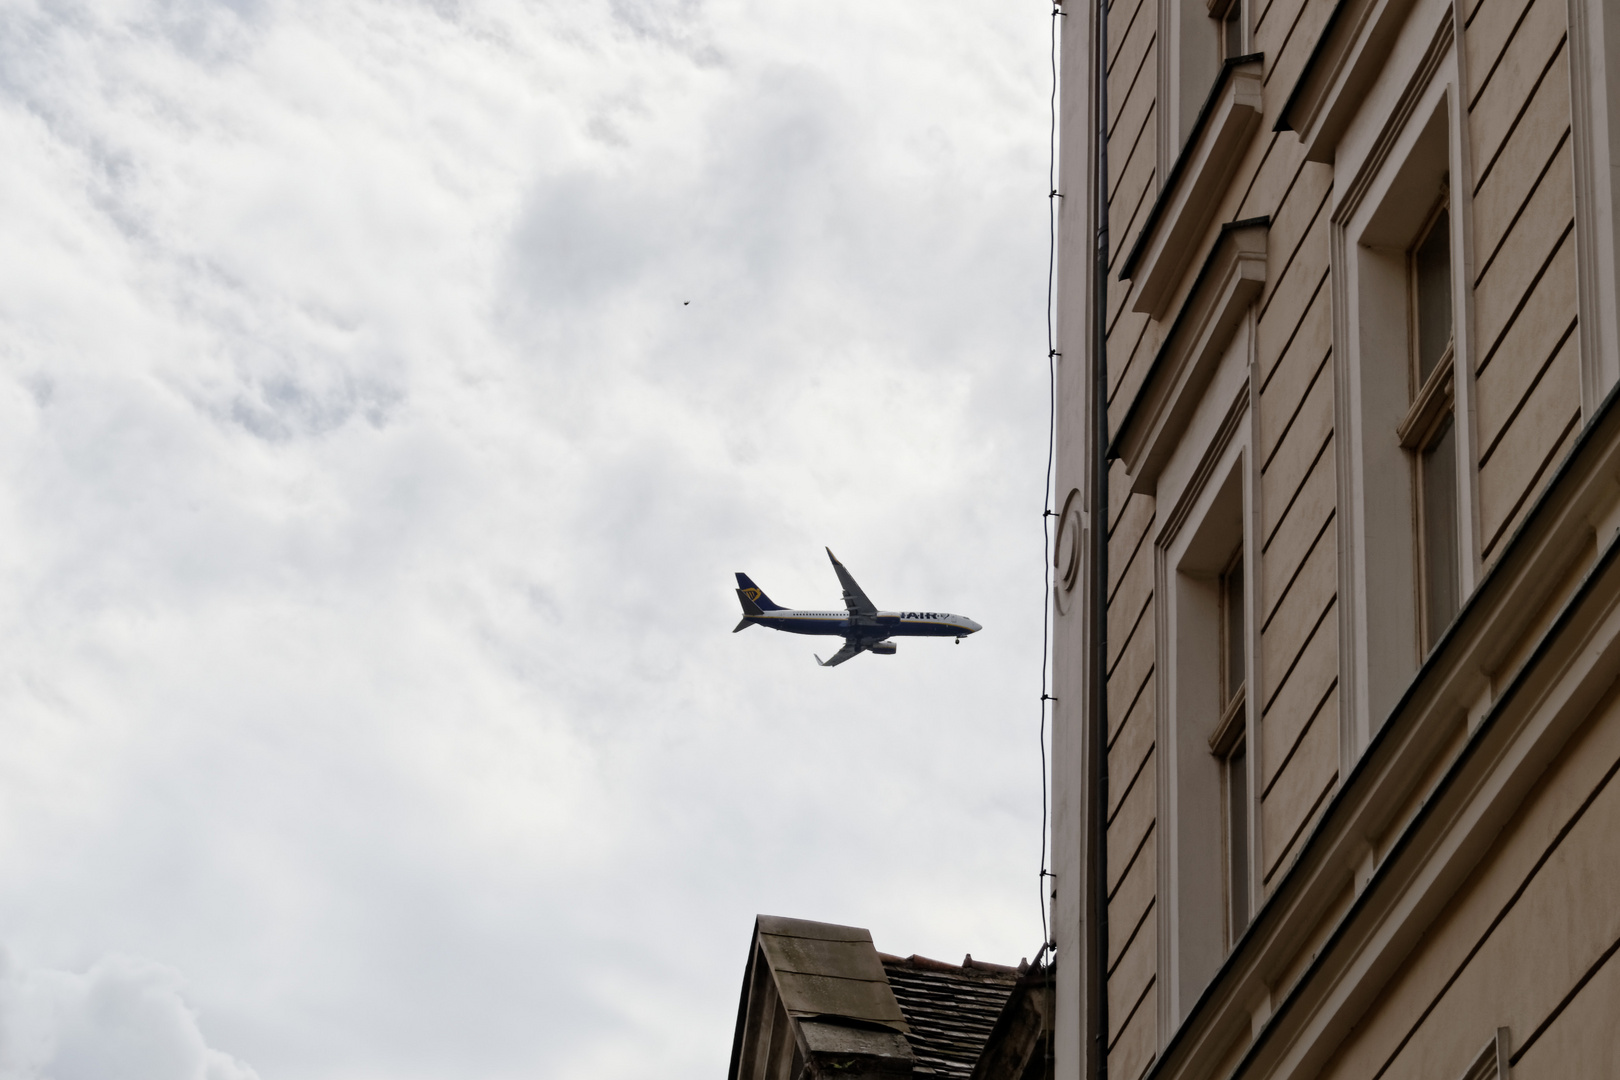  Flugzeug über Wohnhaus